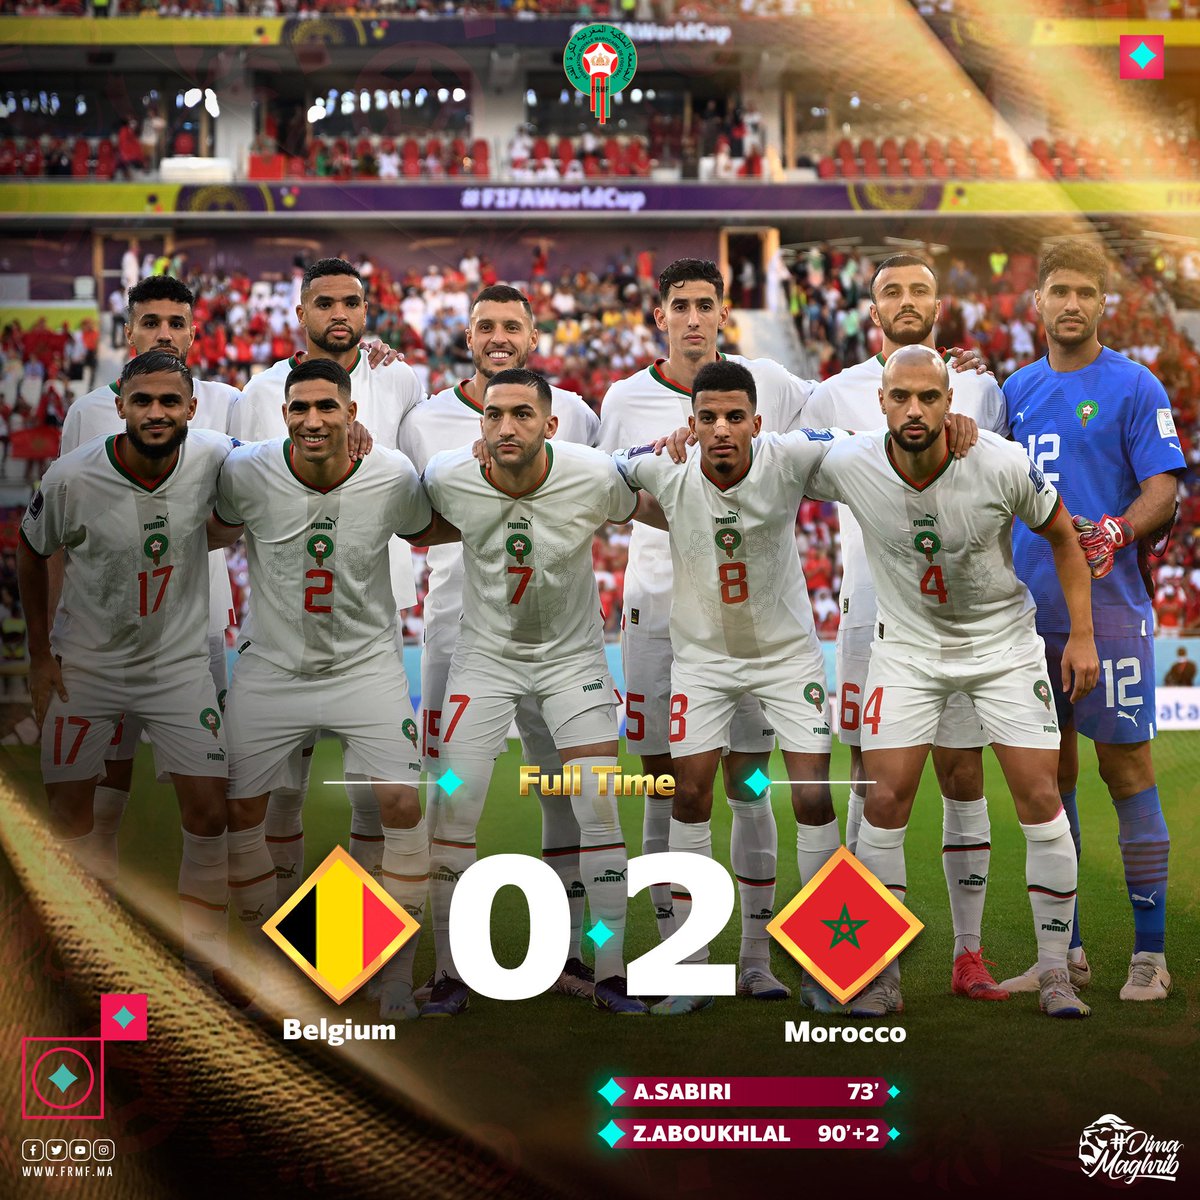 نهاية المقابلة بفوز المنتخب الوطني أمام منتخب بلجيكا بهدفين مقابل لا شيء 🤩

🏁FULL TIME | Morocco 2 - 0 Belgium 
It's a win for our Atlas Lions 🦁 PROUD OF YOU 

#DimaMaghrib 🇲🇦  #TeamMorocco #FIFAWorldCup @pumafootball